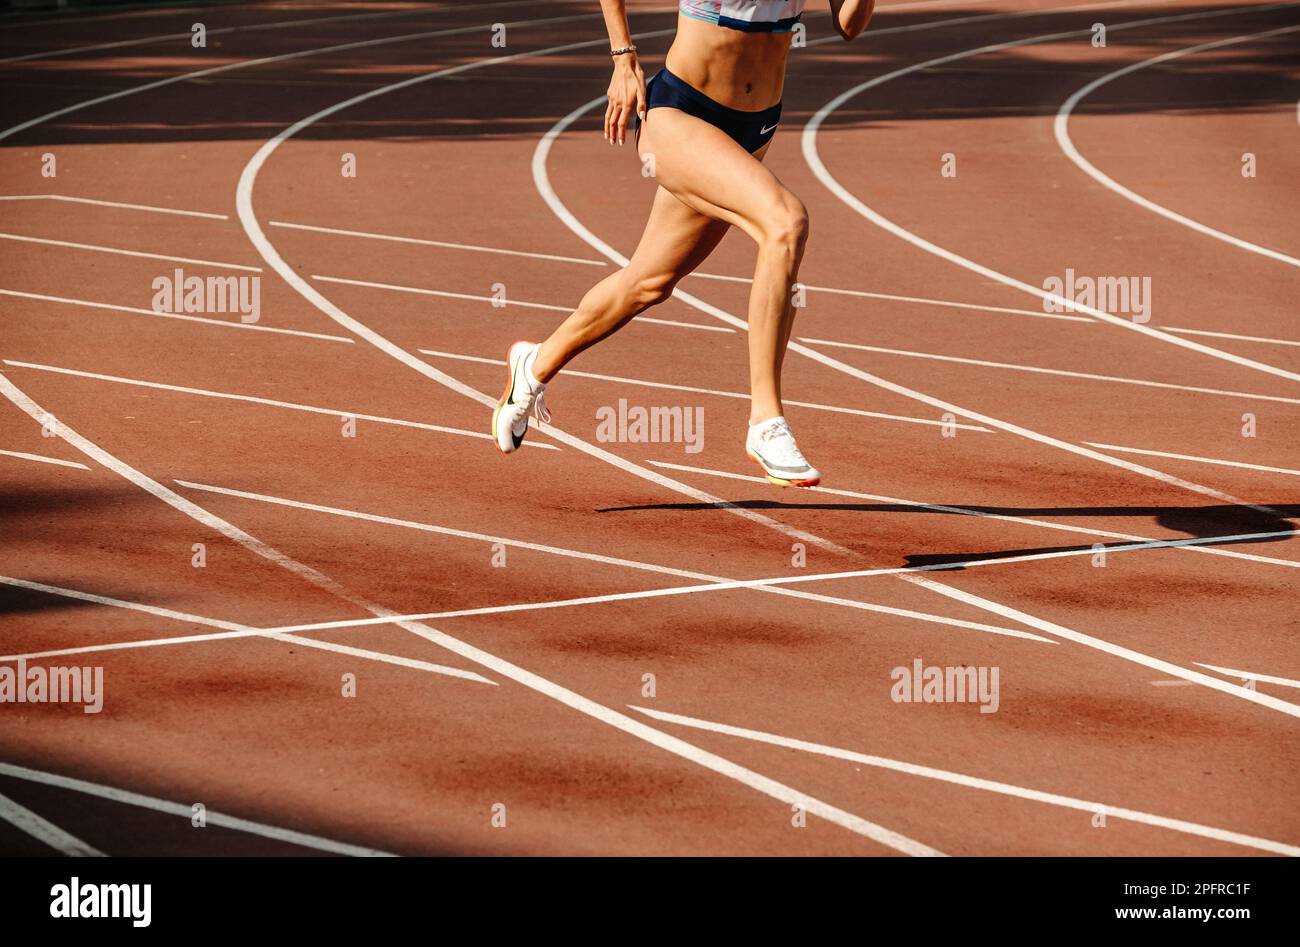 Jambes athlète féminine course à pied au stade, chaussures Spikes pour la course à pied Nike, photo de sport Banque D'Images